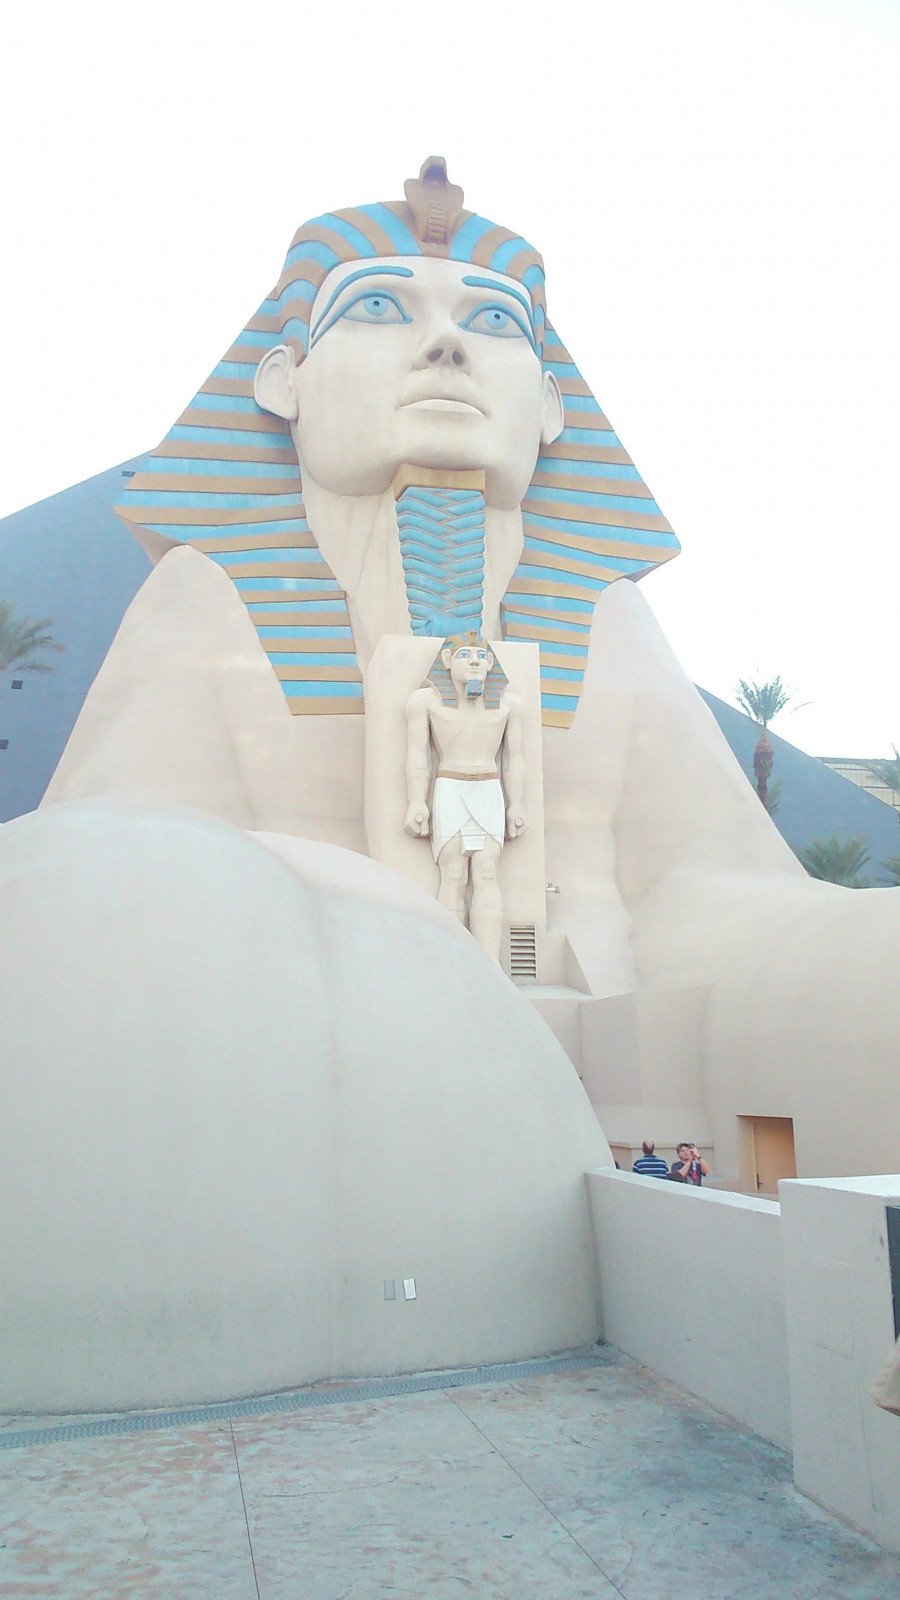 The Sphinx at Hotel Luxor in Las Vegas